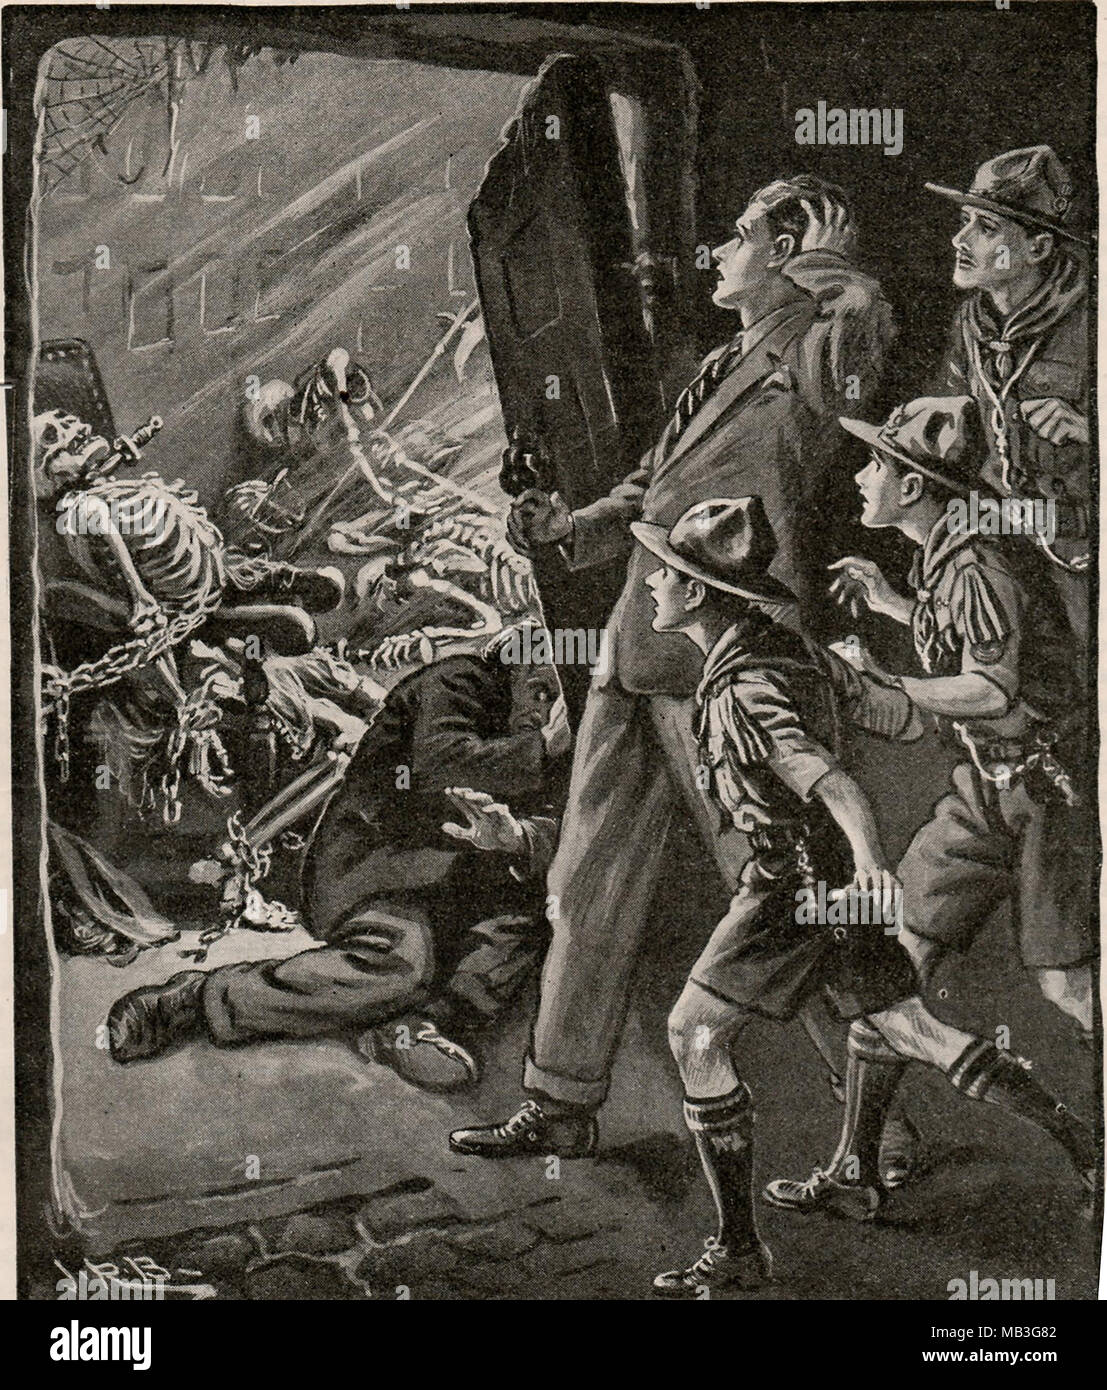 Una ilustración de los muchachos anual 1932-33 (UK) mostrando los boy scouts descubrir un montón de esqueletos encadenados Foto de stock